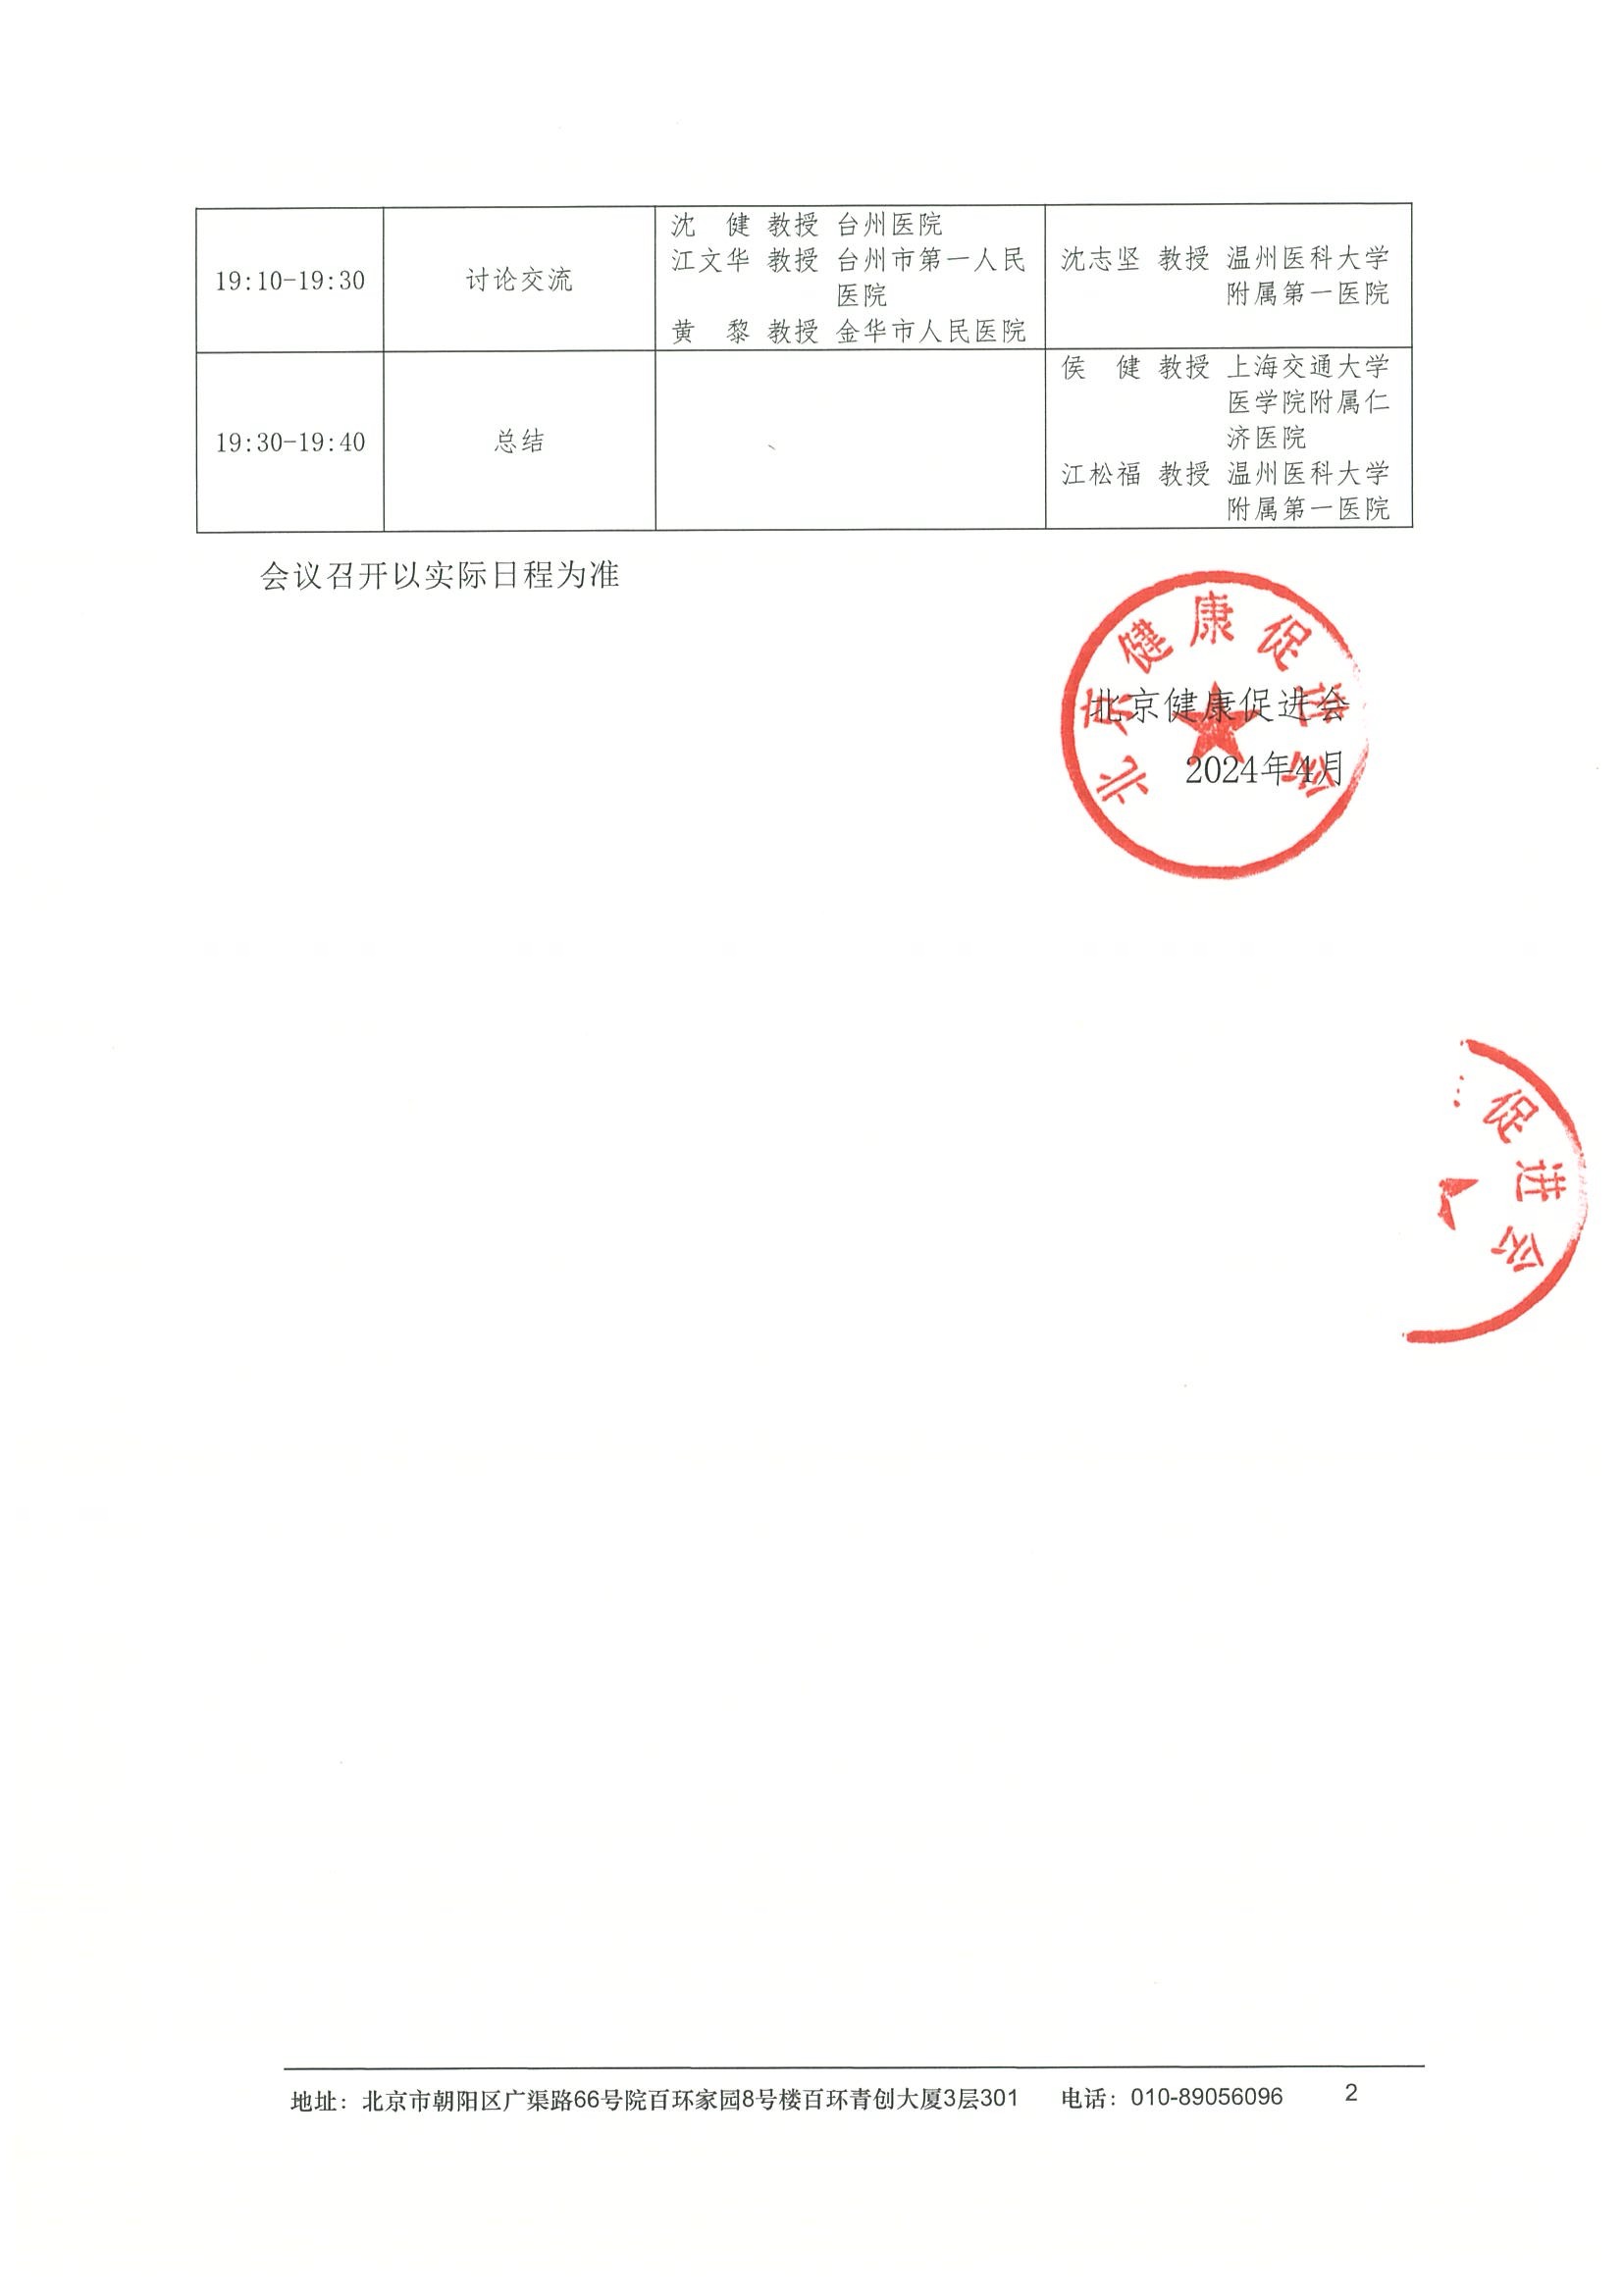 日程-2024“星火计划卫星城-温州站”项目 2.jpeg